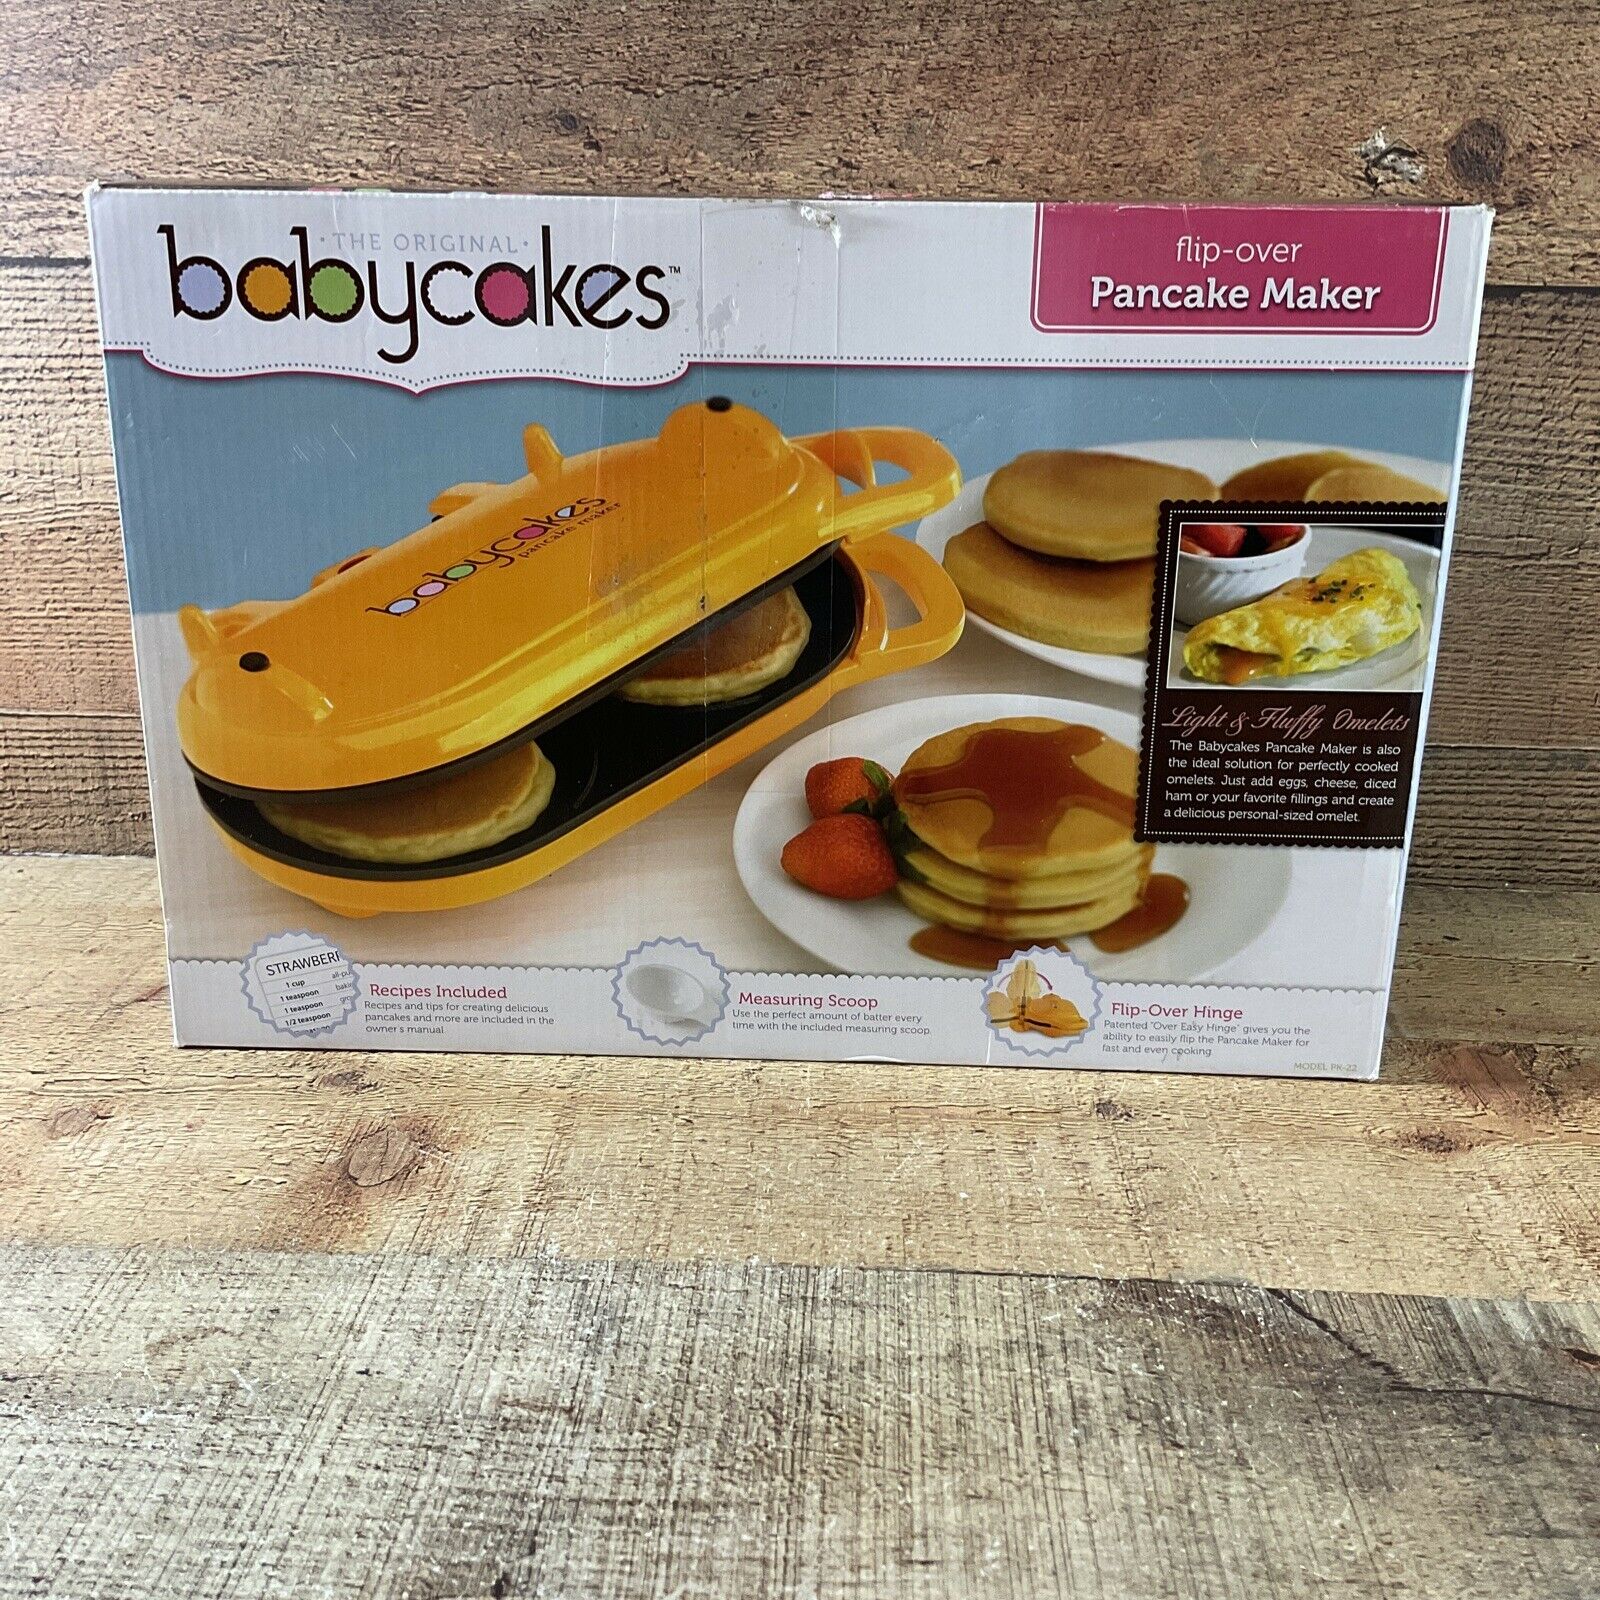 Babycakes Orange Flip Over Pancake Maker Or Omelet Maker Model Pk-22 -new!